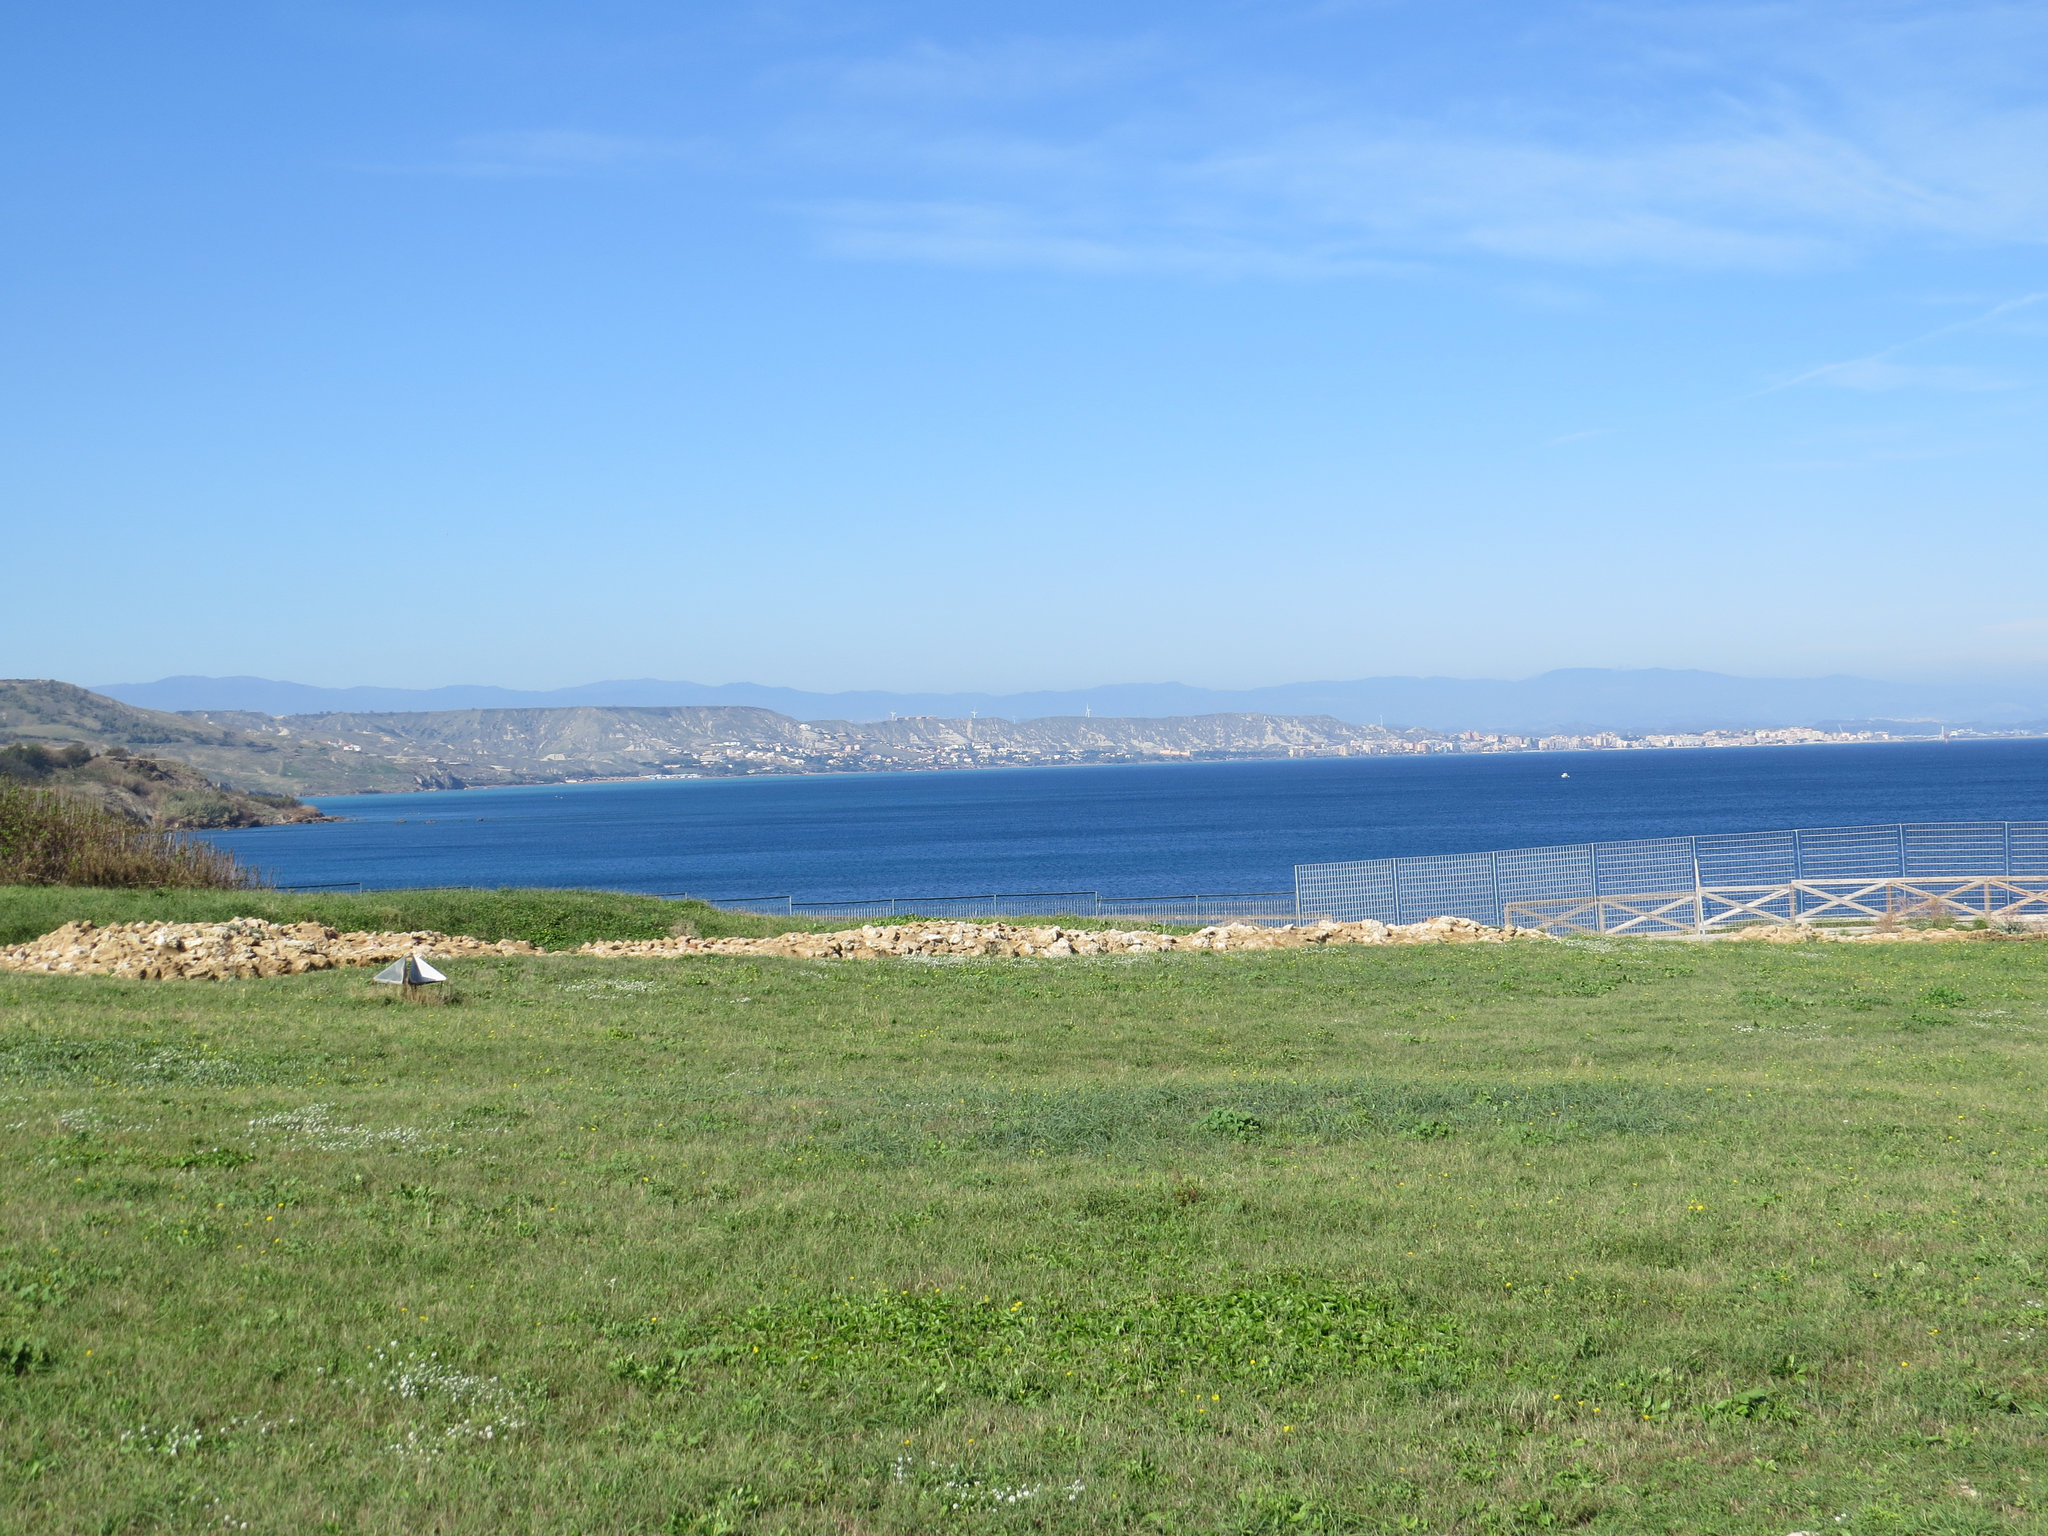 Le golfe de Crotone vu depuis le Cap Colonna.